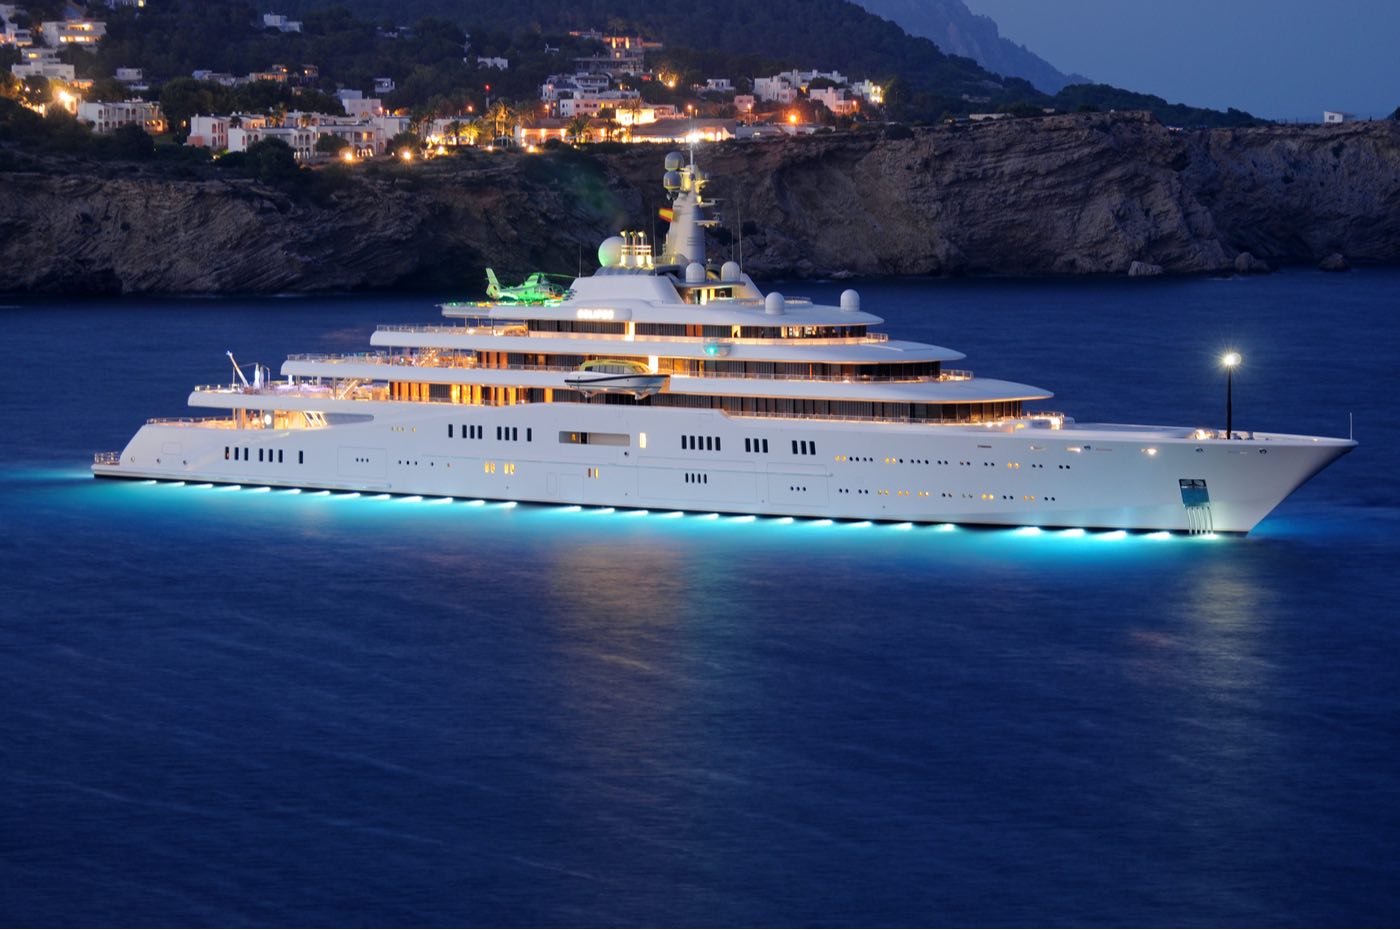 16 opulentos y extravagantes lujos que solo los mega multimillonarios pueden permitirse